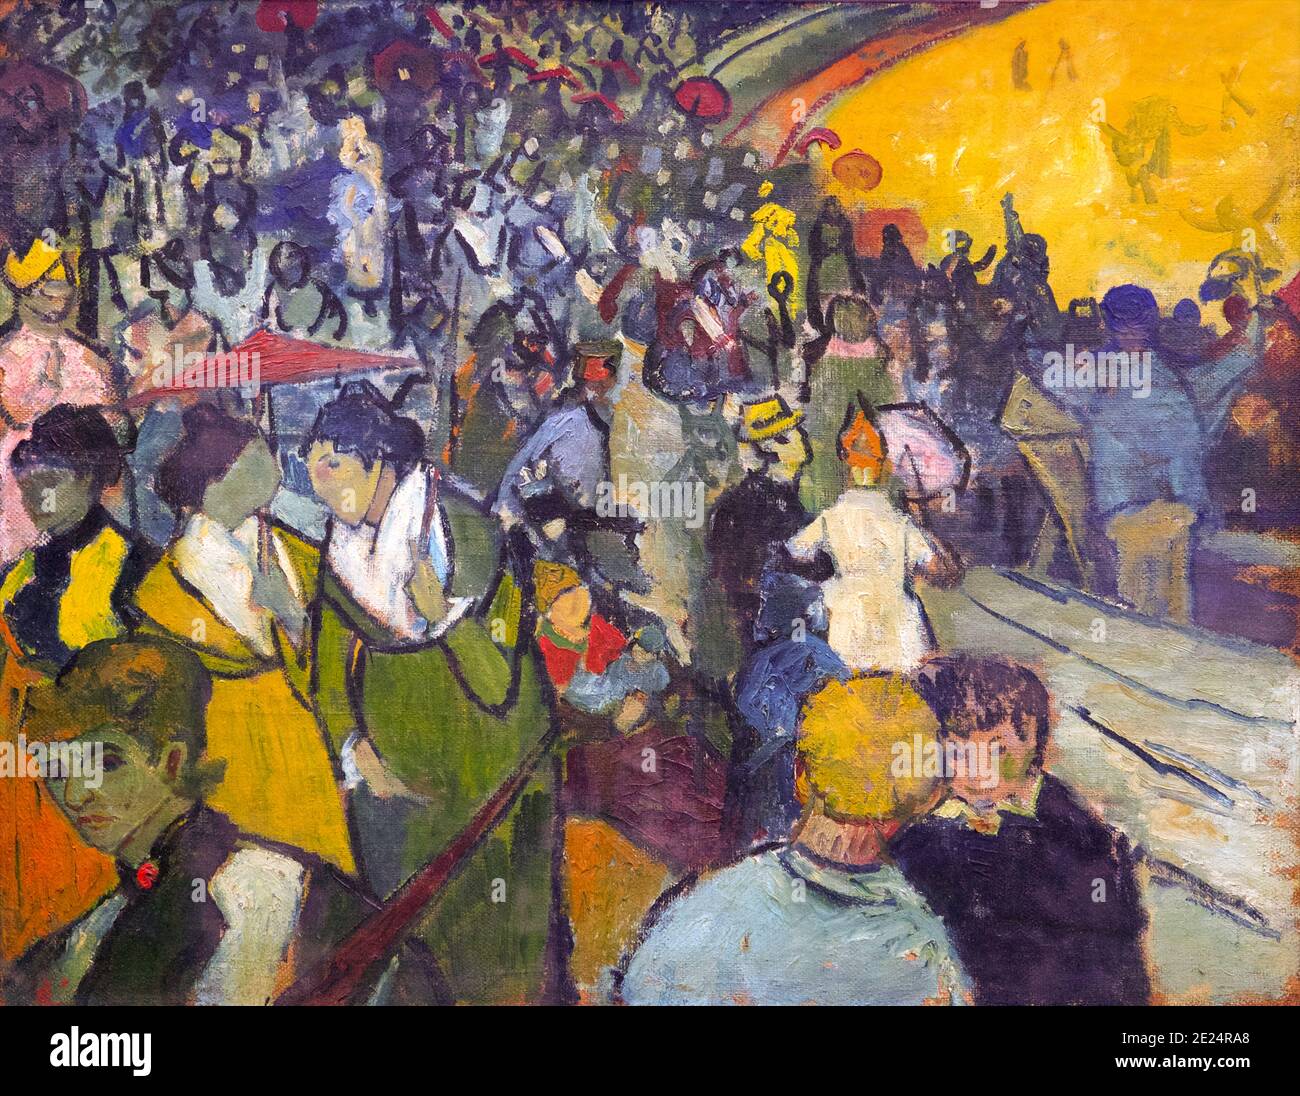 Spectateurs dans l'arène d'Arles, les Arènes, Vincent van Gogh, 1888 ans, Musée de l'Ermitage, Saint-Pétersbourg, Russie Banque D'Images